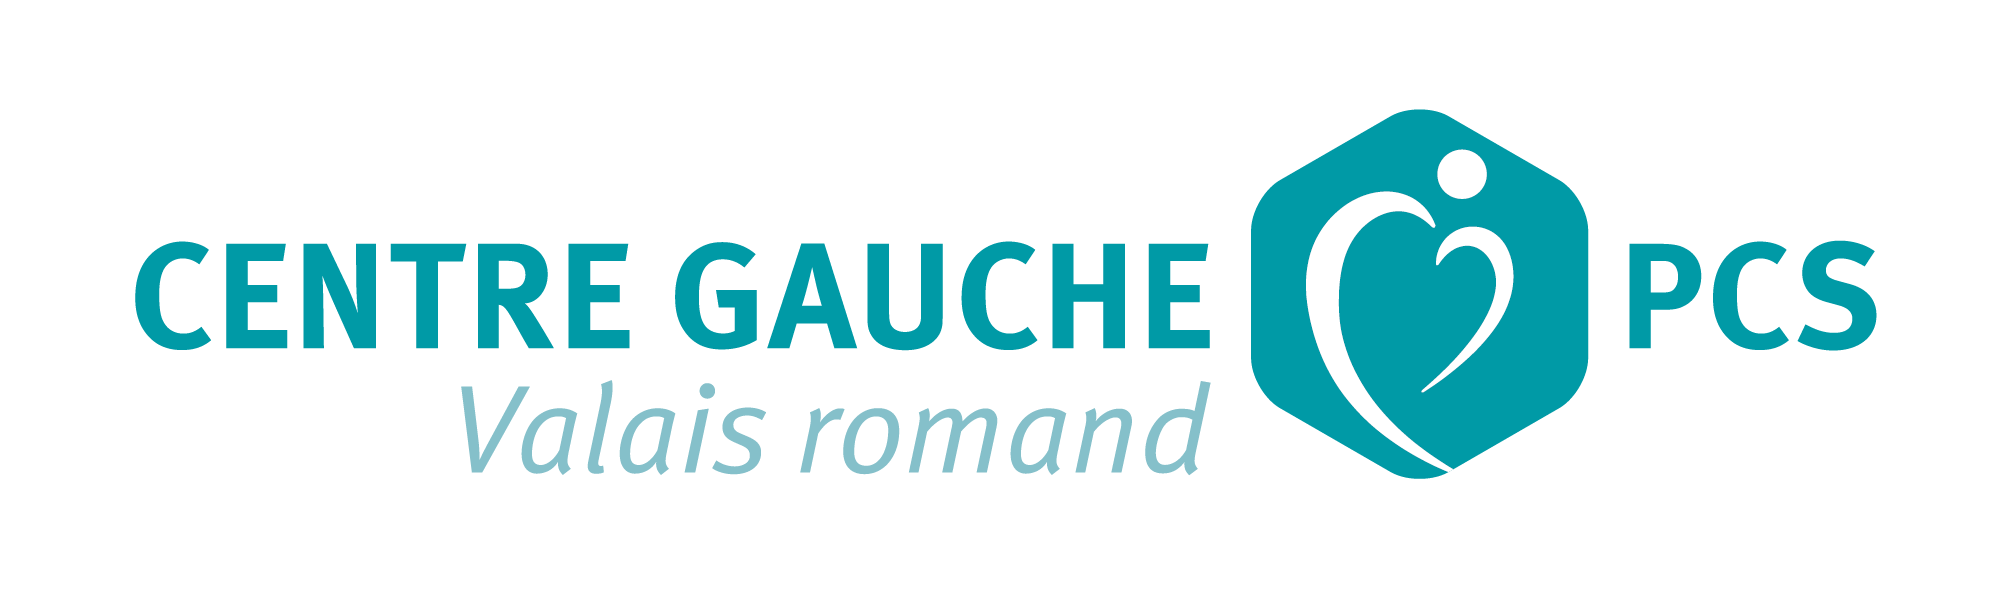 Centre Gauche PCS Valais romand